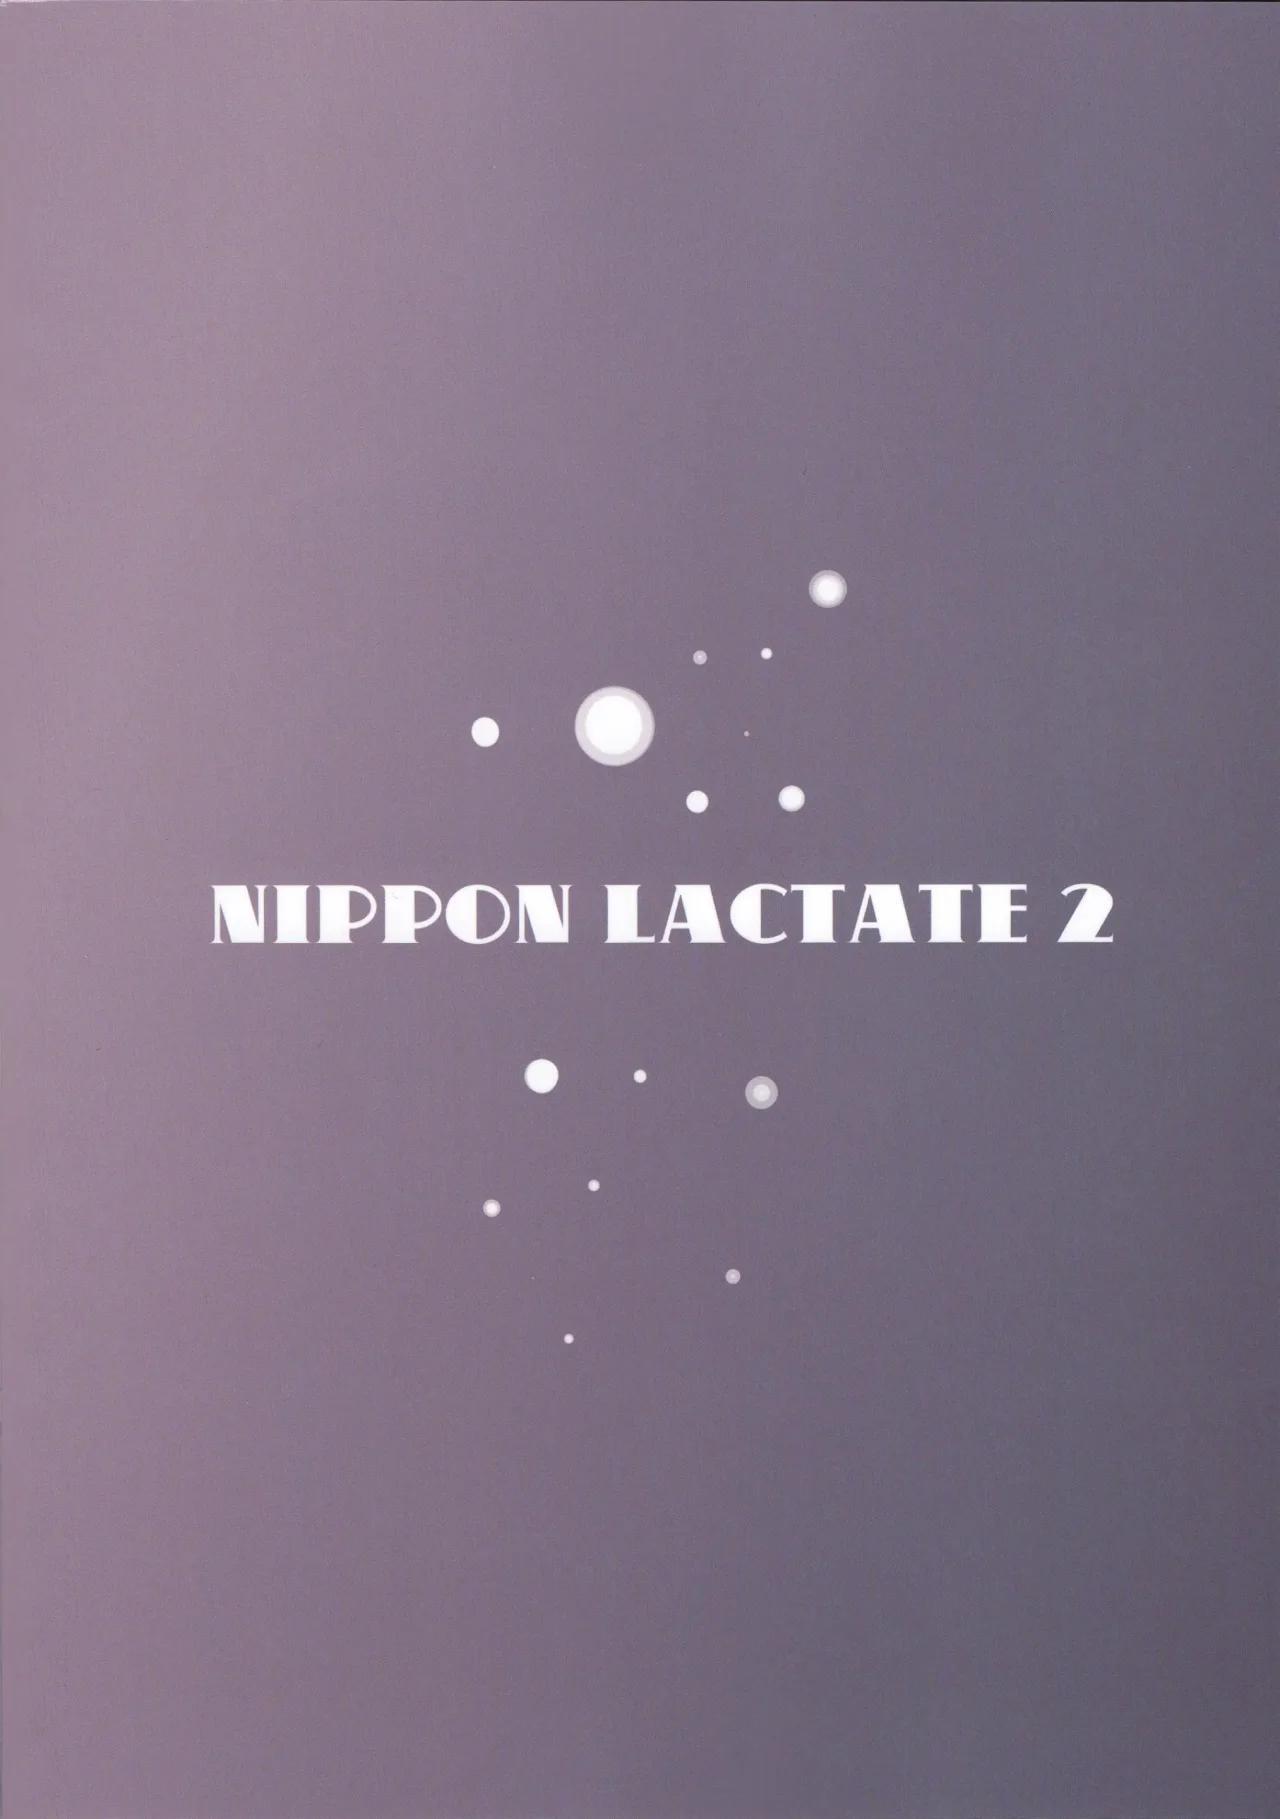 NIPPON LACTATE II Kakugari - 25